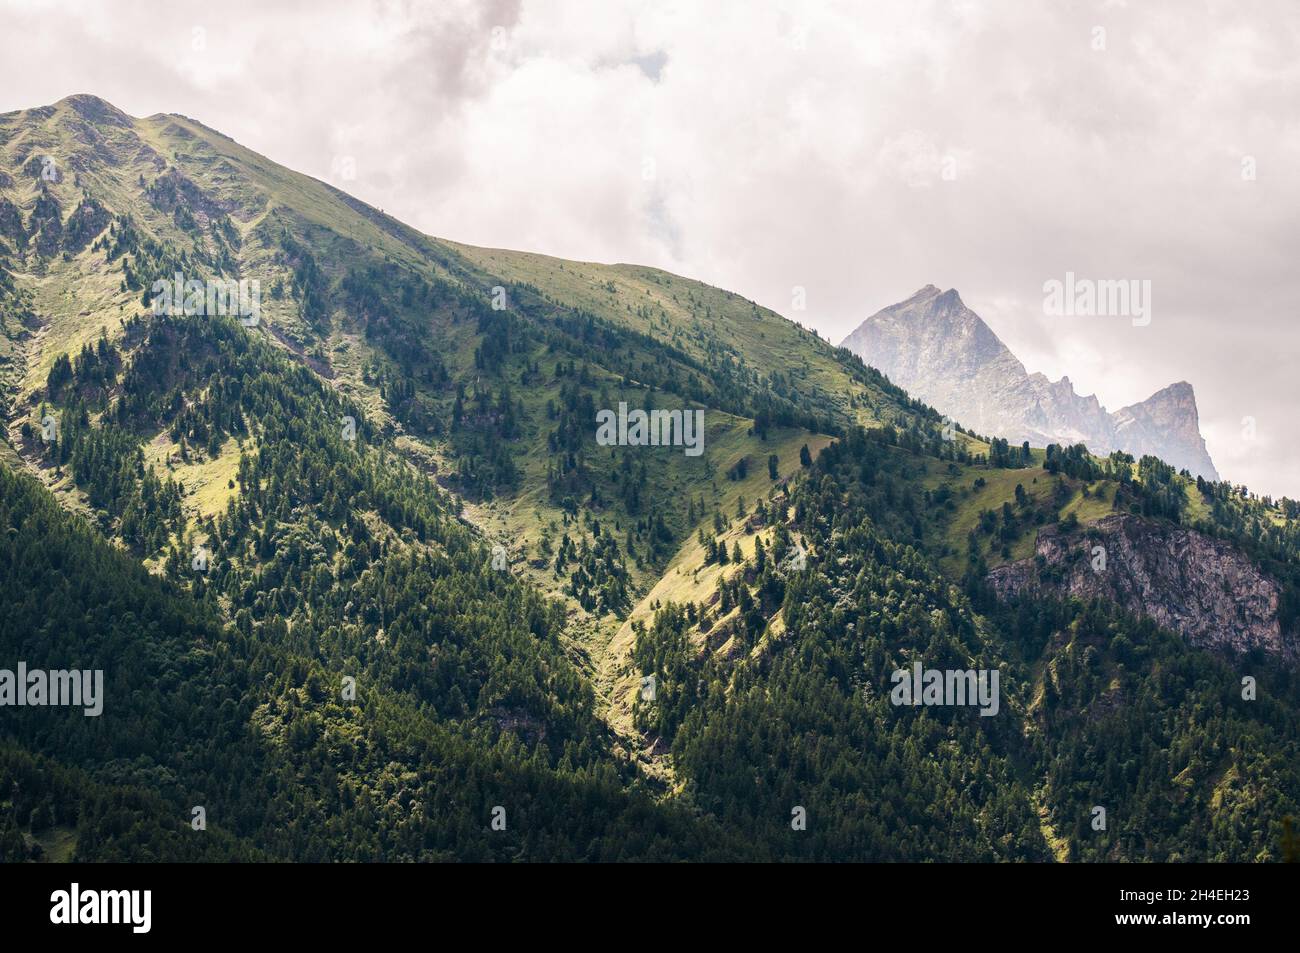 Valle varaita, Piemont, Italien Stockfoto